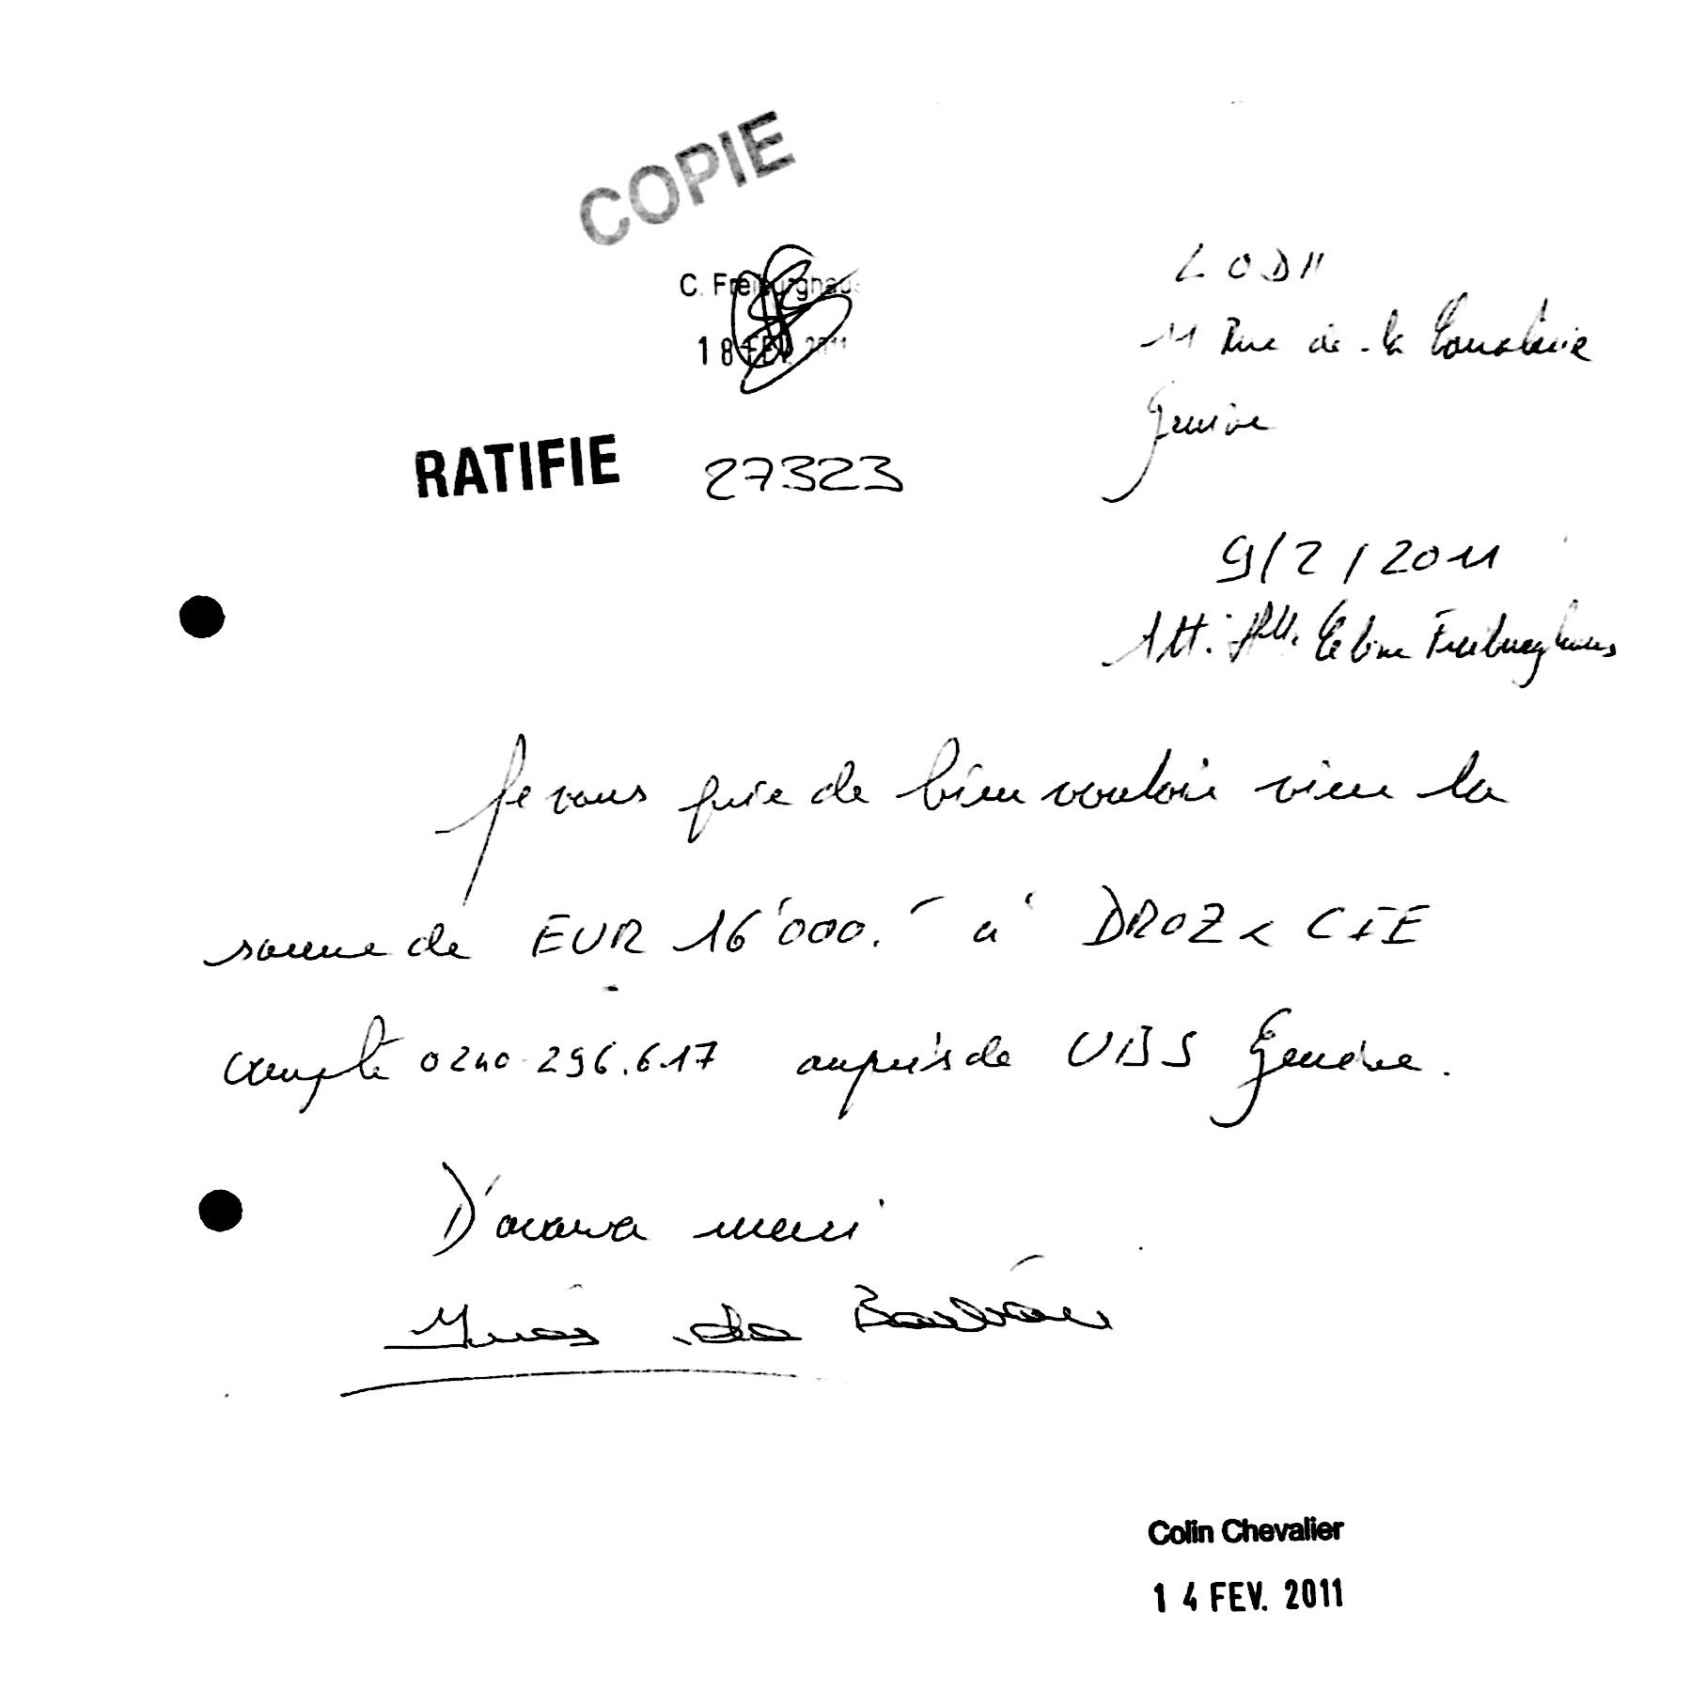 Orden de retirada de 16.000 euros de la cuenta del banco suiza firmada por la princesa Inés de Borbón en febrero de 2011